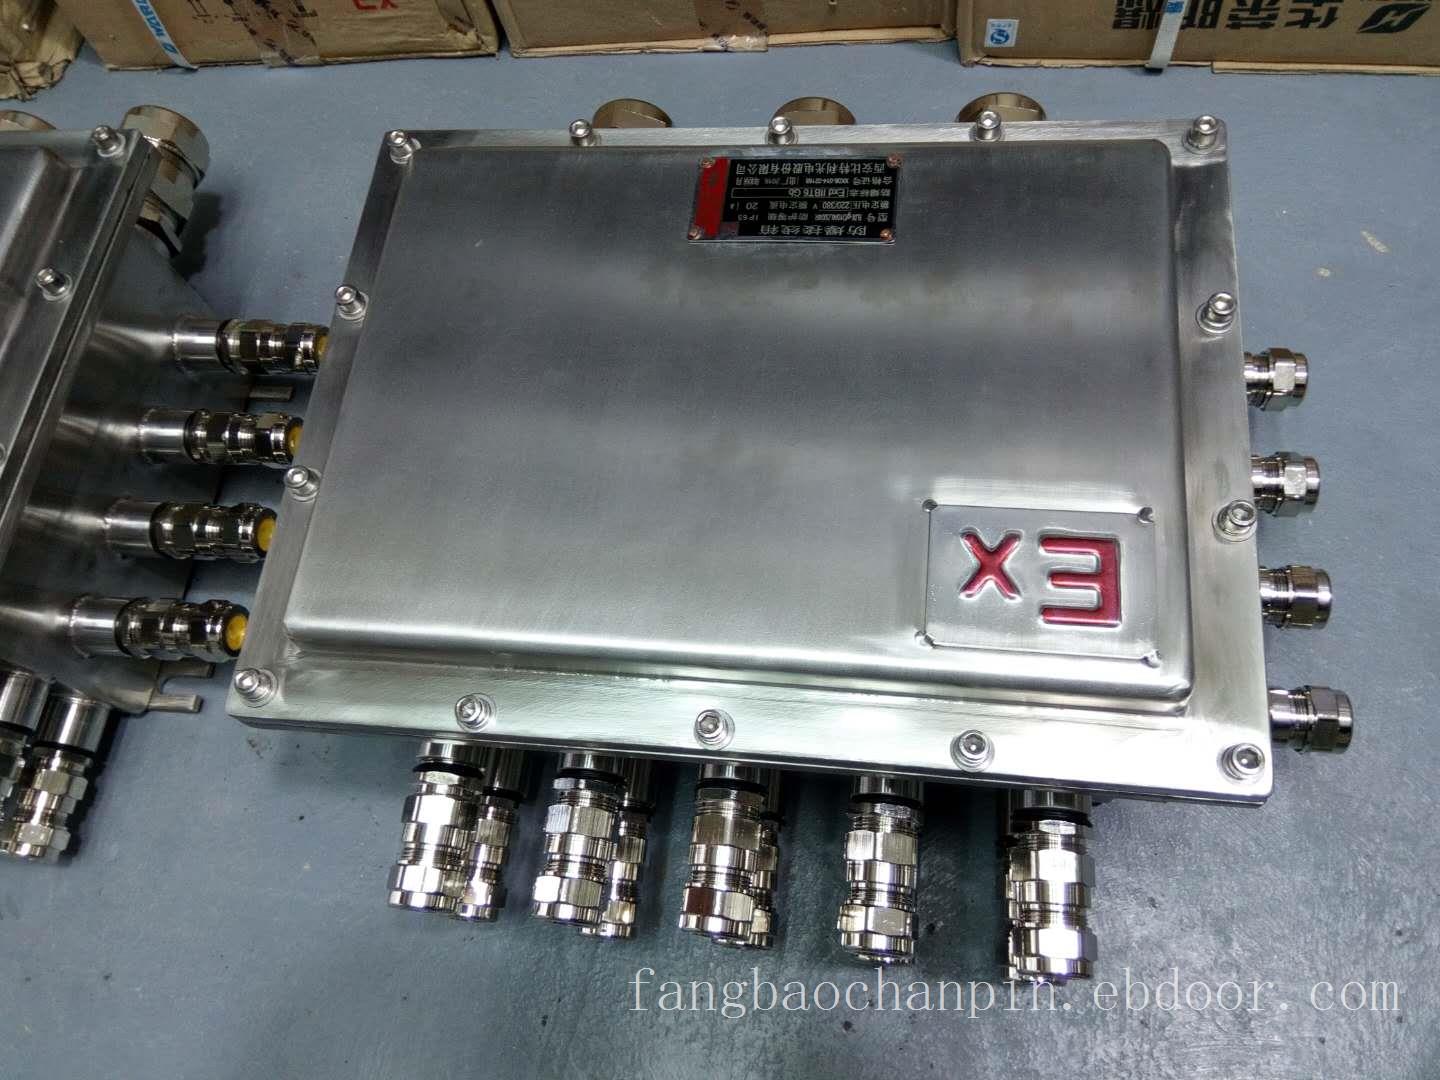 不锈钢防爆控制箱可作为照明、动力电机控制用途